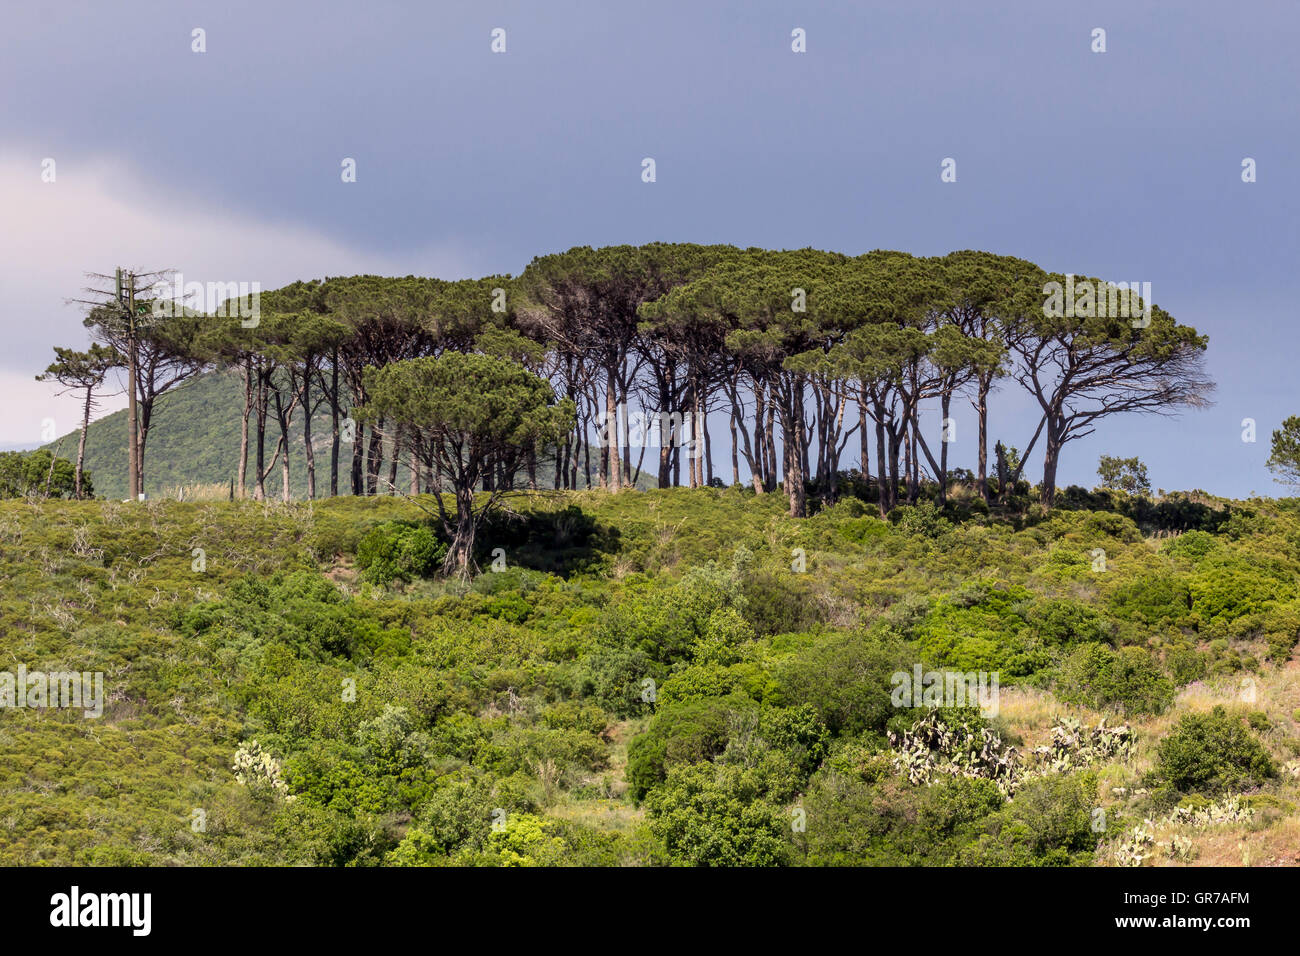 Bois de pins près de Rio nell'Elba, l'île d'Elbe, Toscane, Italie Banque D'Images